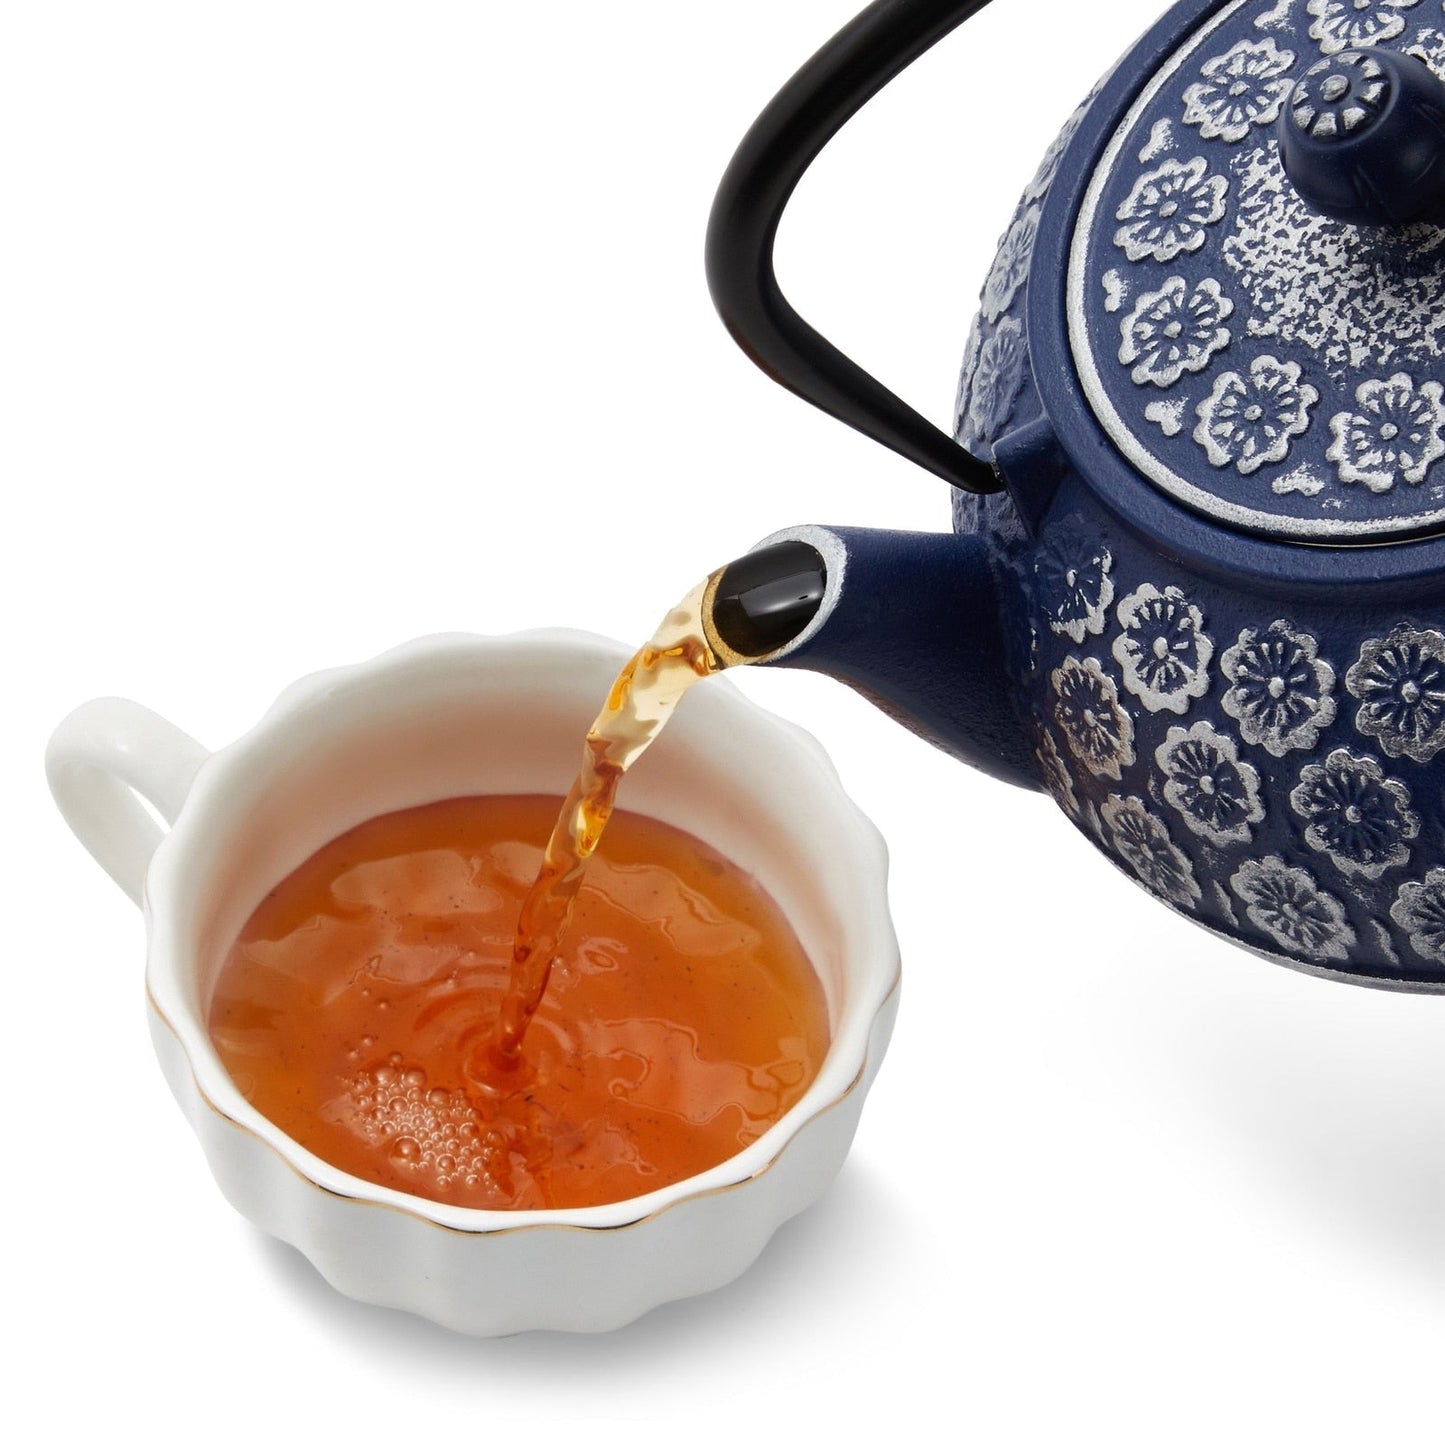 Théière chinoise en fonte bleue avec infuseur pour thé en feuilles, comprend poignée et couvercle amovible, 34 oz